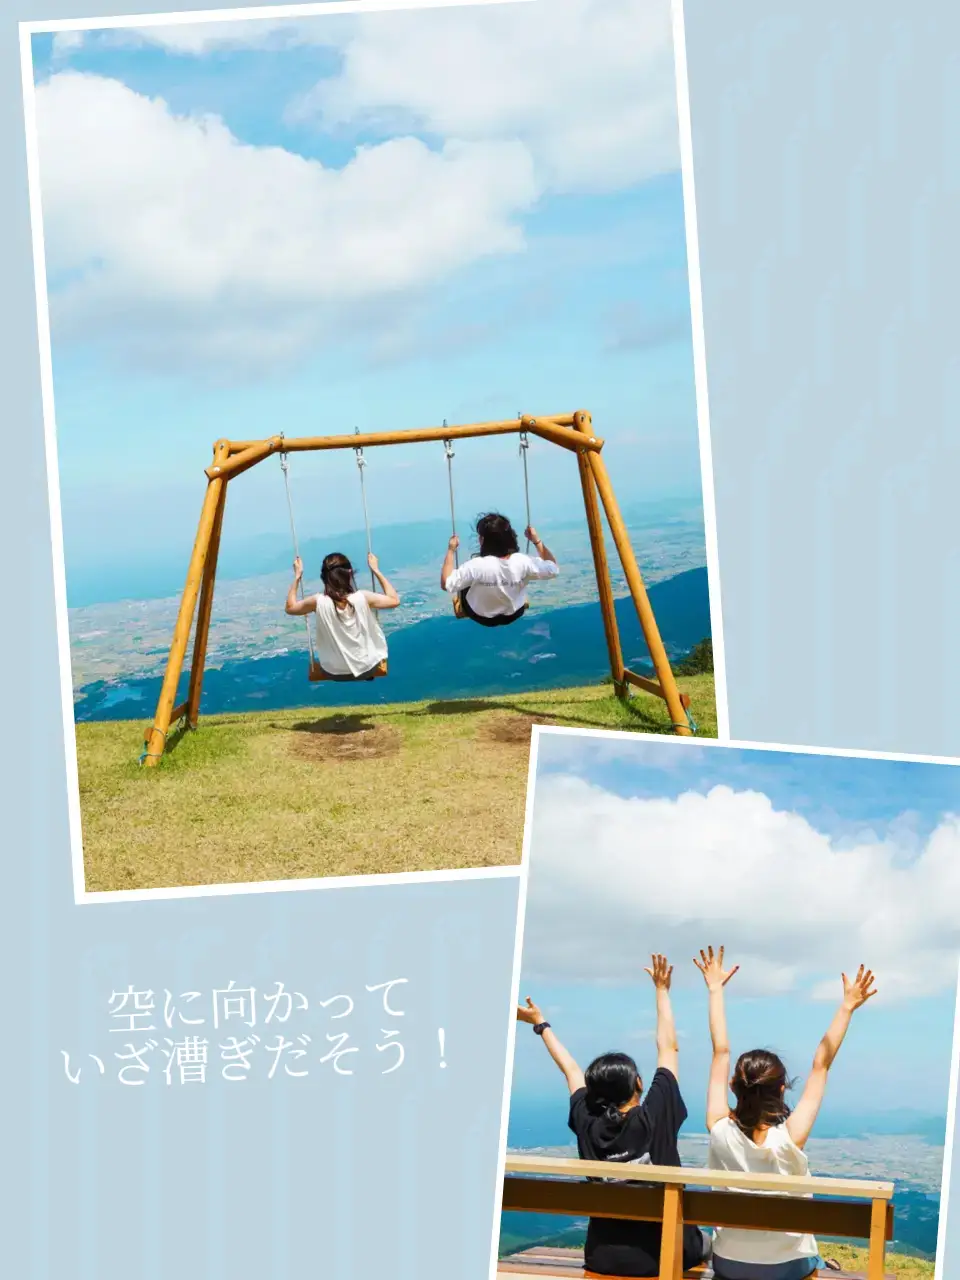 【香川】ロープウェイで行く天空のブランコの画像 (3枚目)